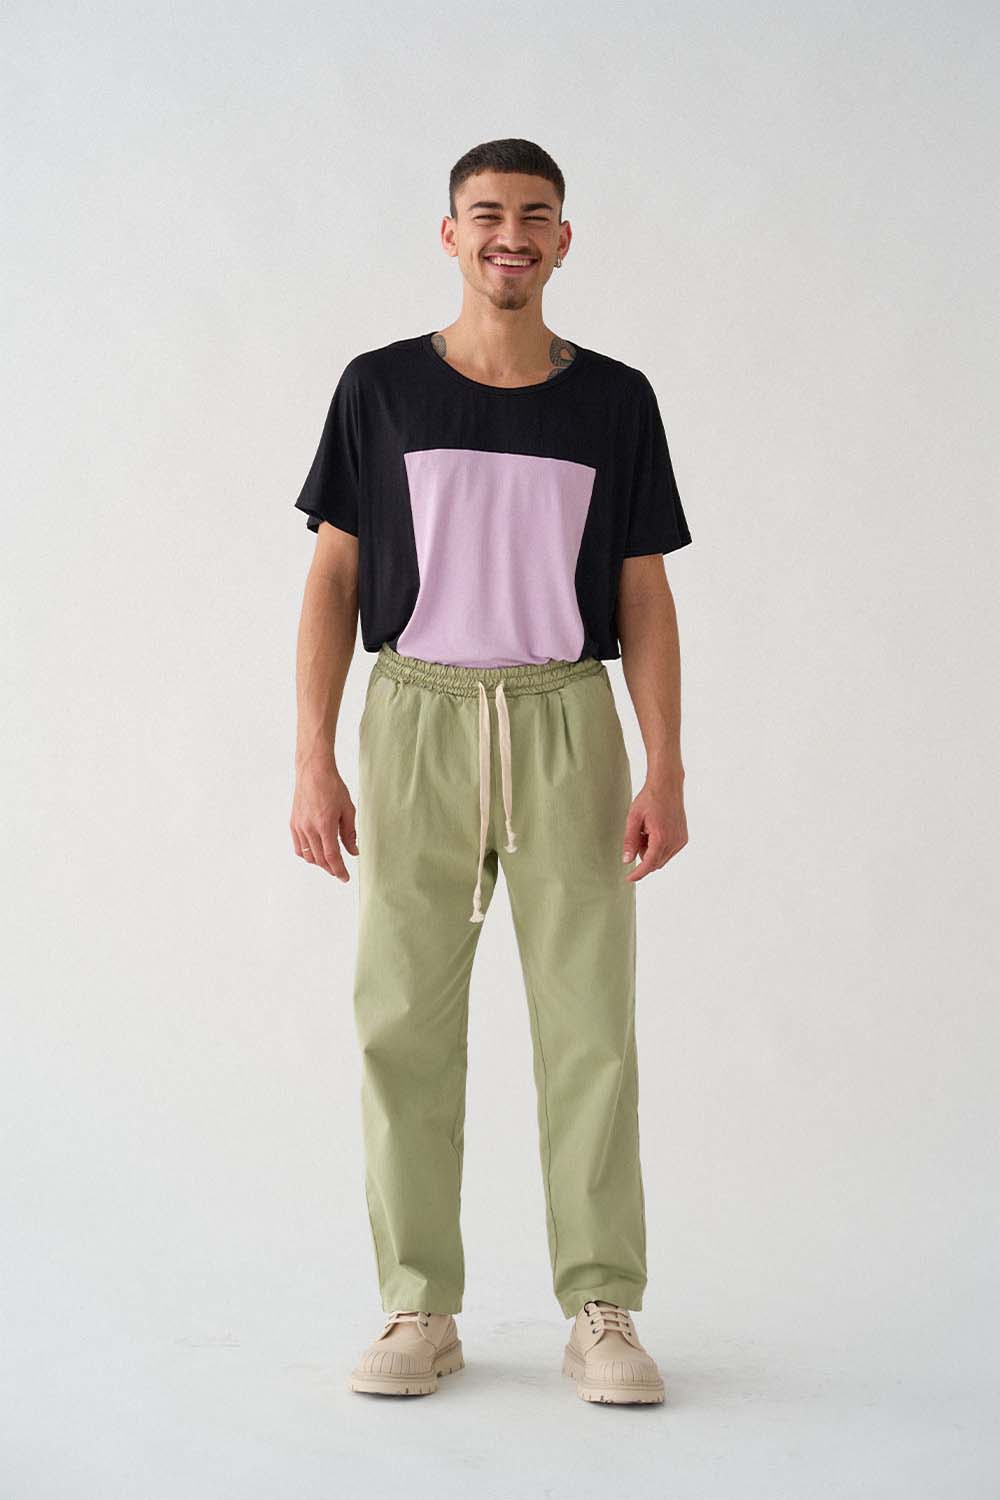 imagen del modelo con camiseta quadrilaterus negro y lila y pantalón worker verde